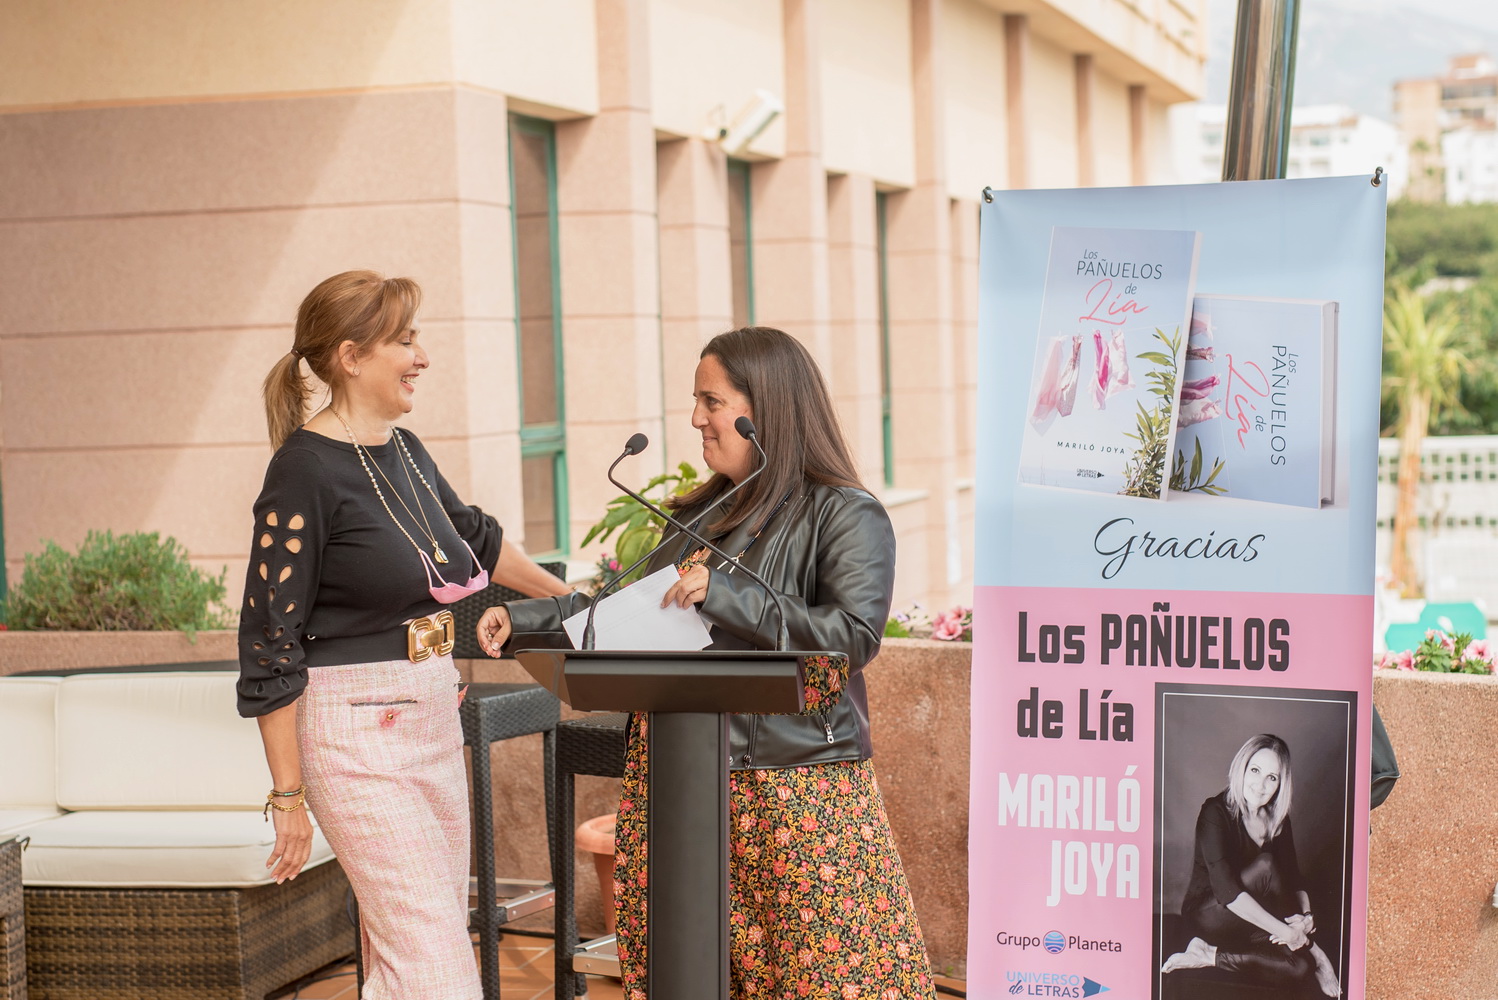 Los Pañuelos de Lía es el título del primer libro que presenta la directora de Infocosta, Mariló Joya.